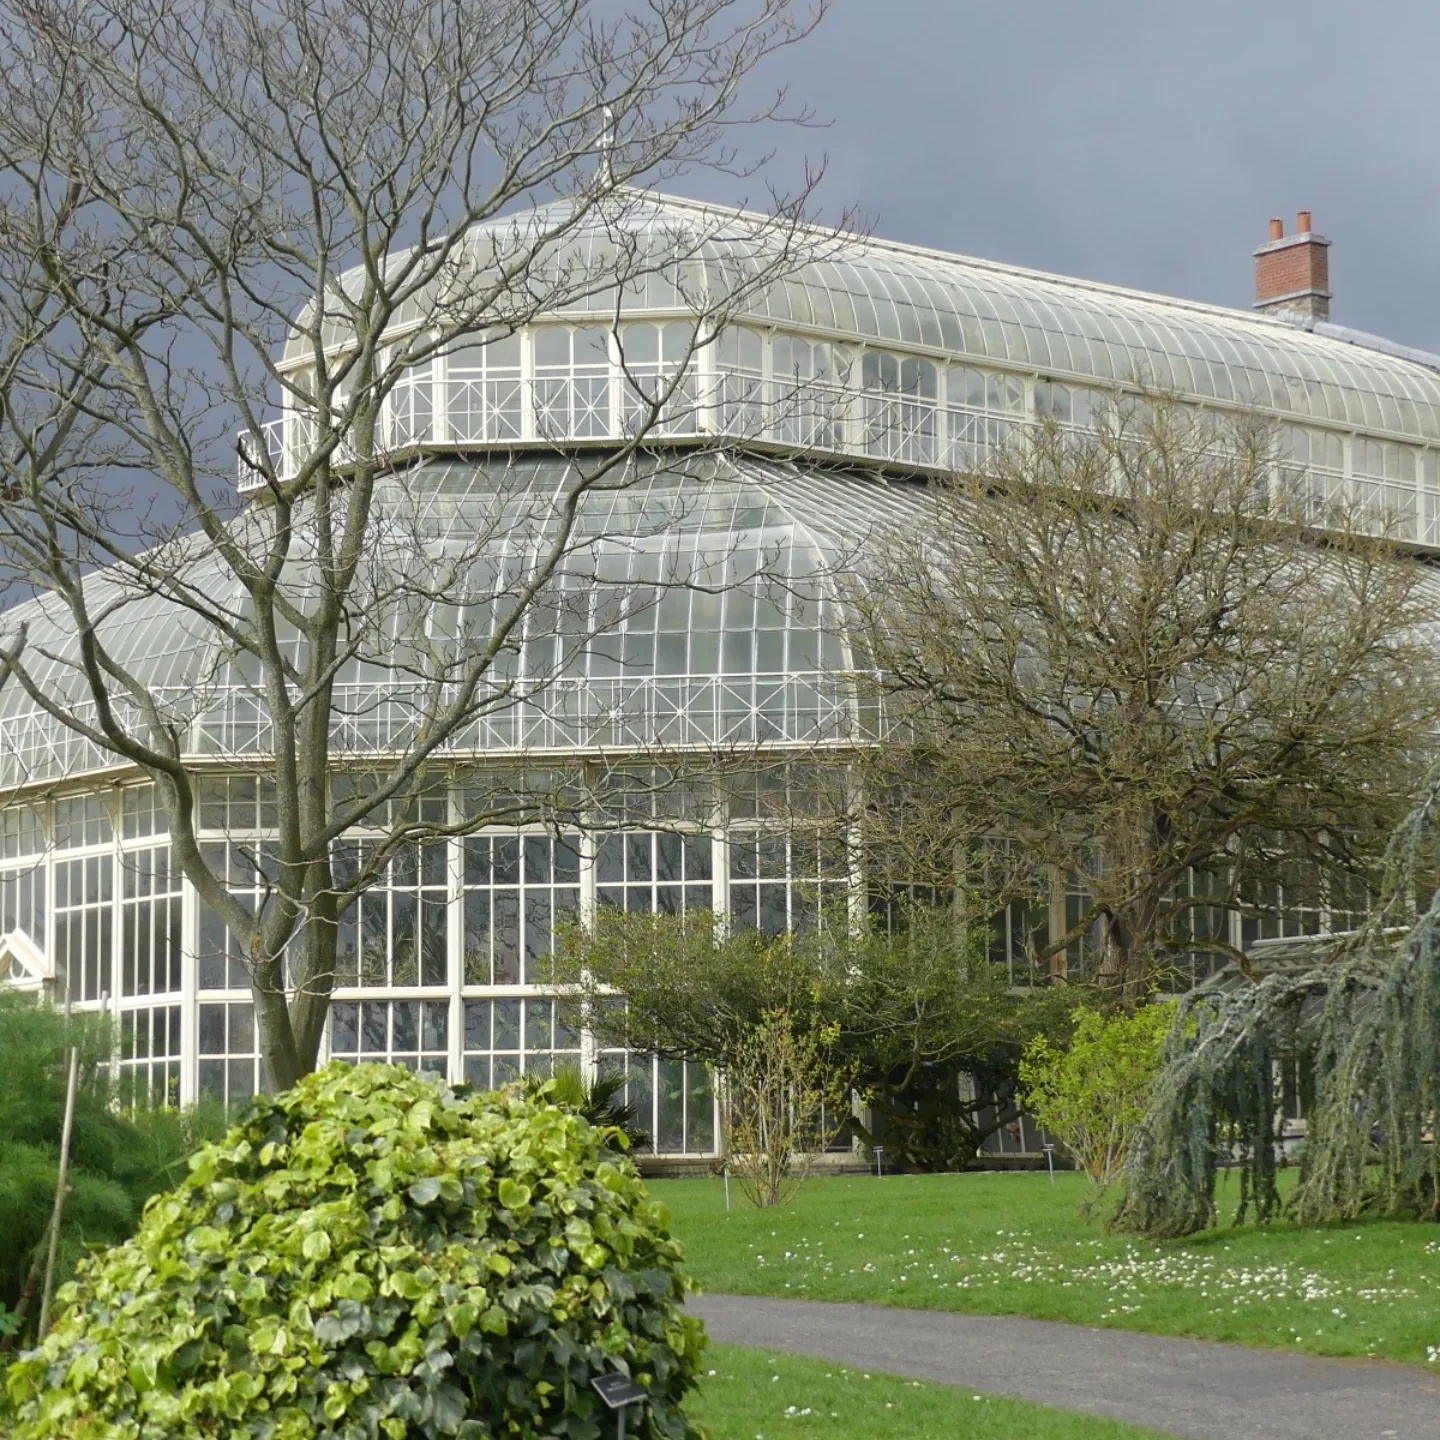 The National Botanic Garden in Dublin